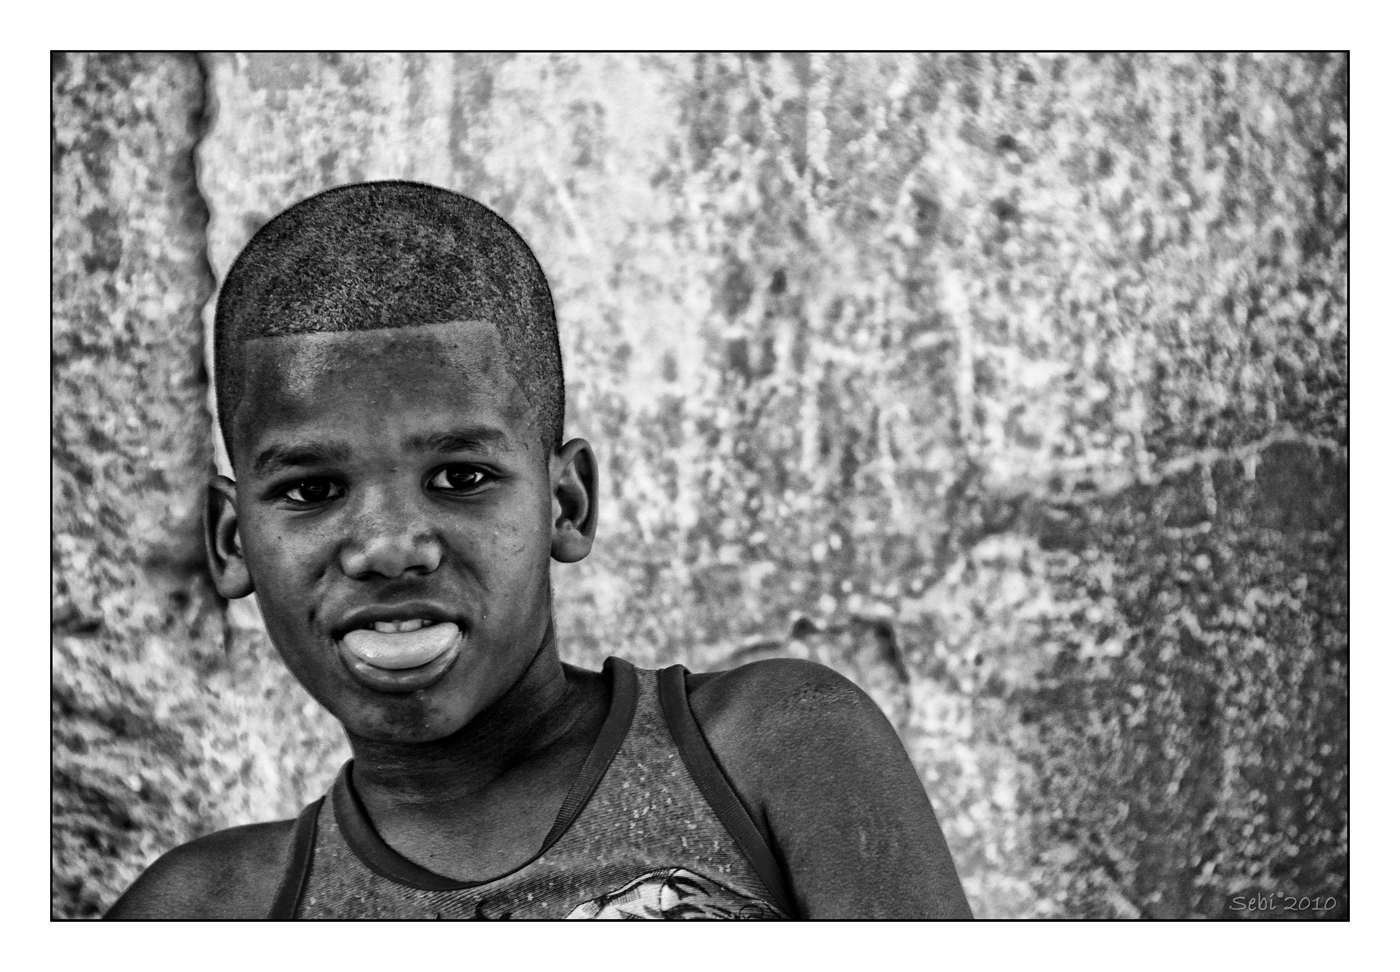 Cuba en blanco y negro - rid - 086.jpg